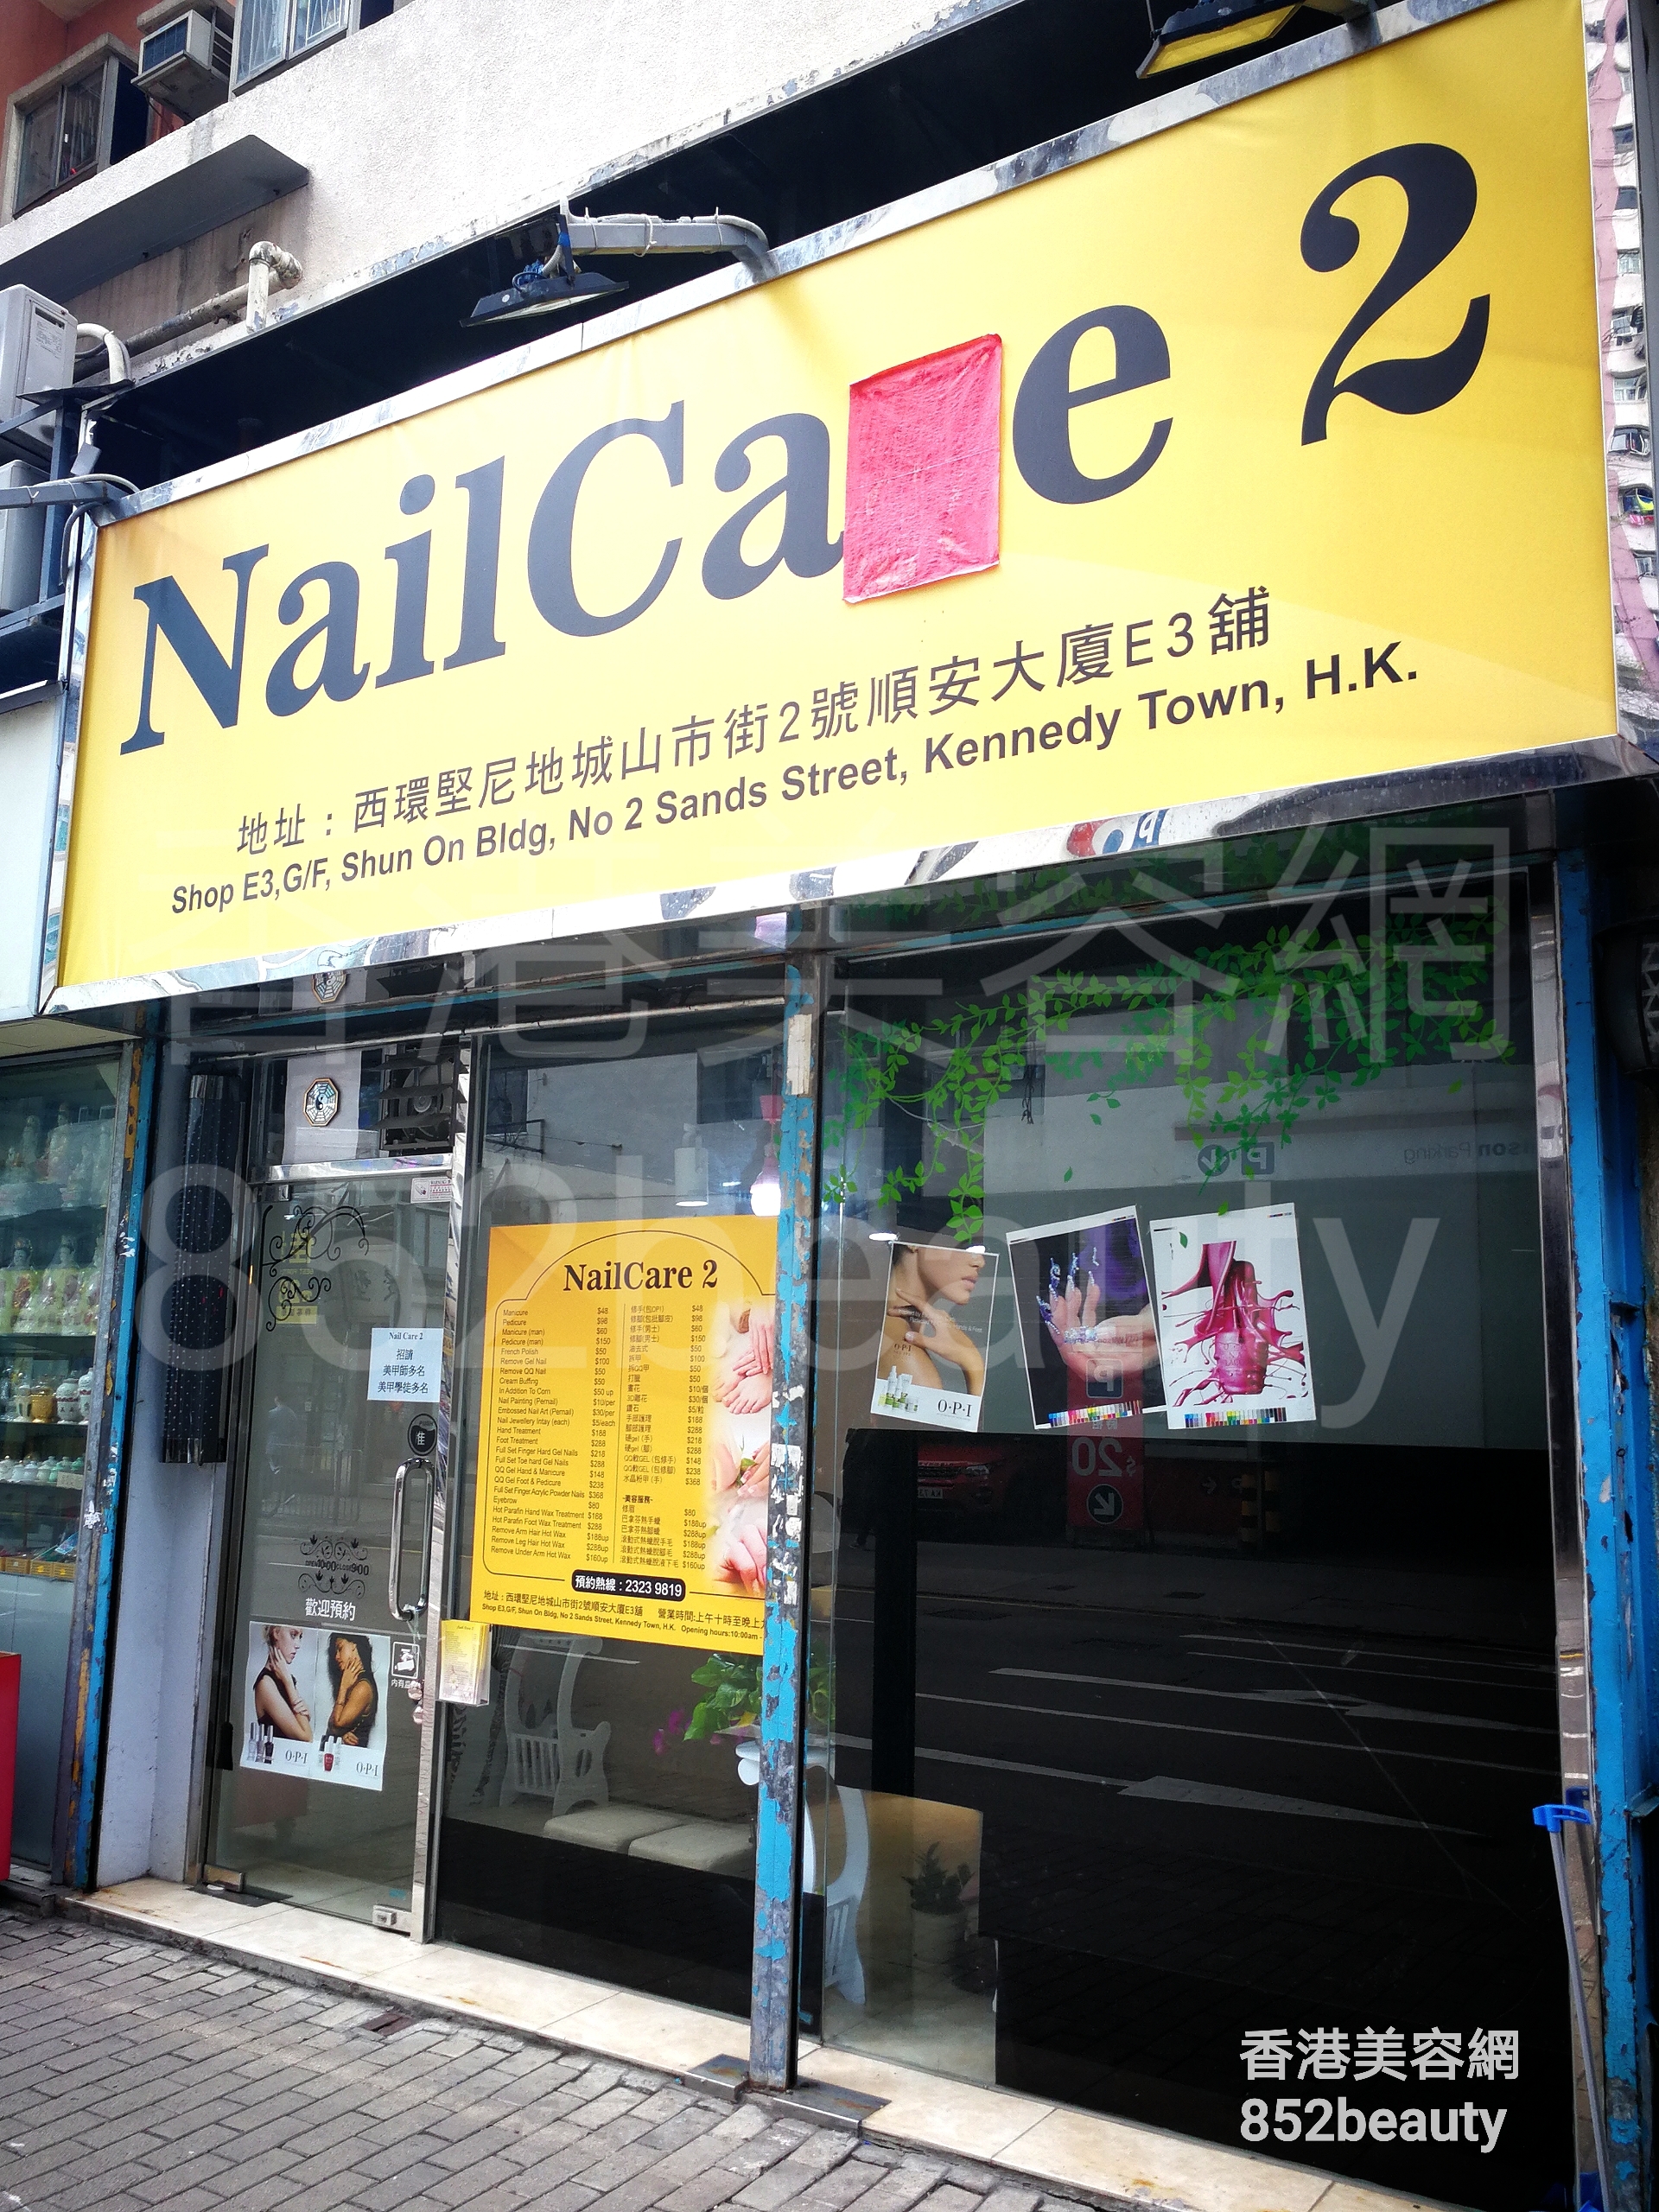 香港美容網 Hong Kong Beauty Salon 美容院 / 美容師: NailCare 2